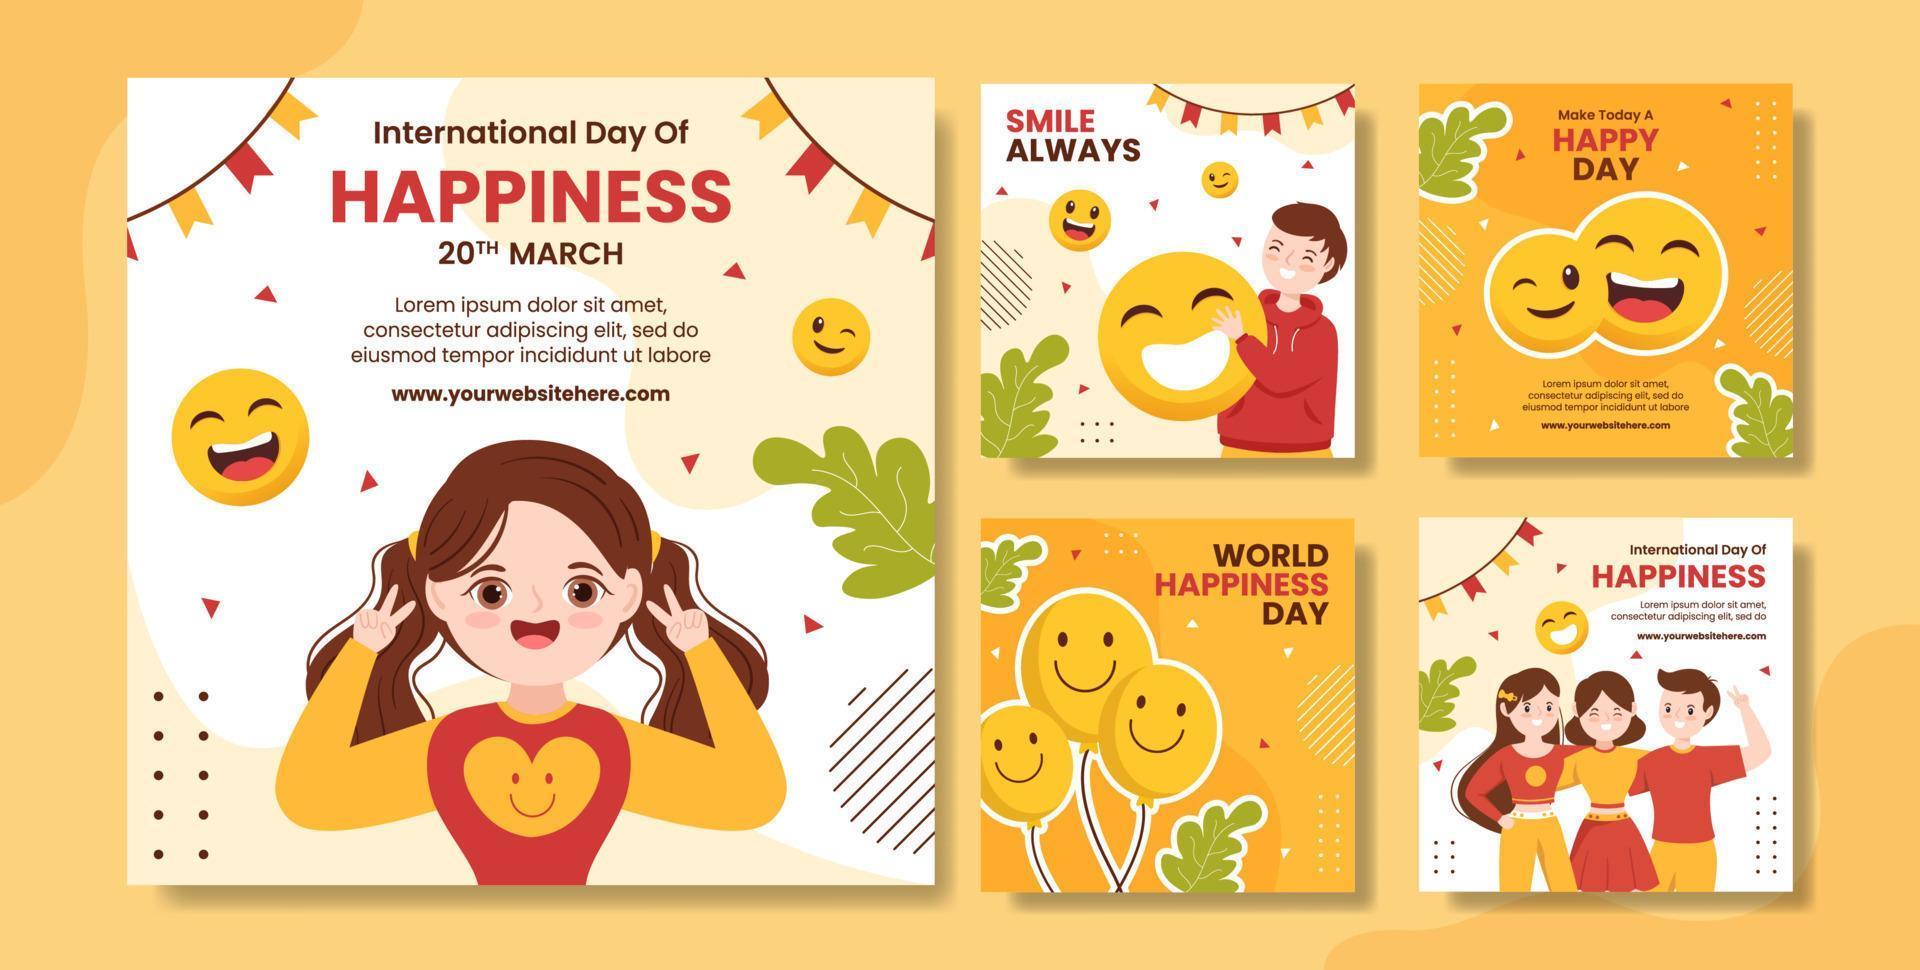 publicación en redes sociales del día mundial de la felicidad con cara sonriente ilustración de plantillas dibujadas a mano de dibujos animados planos vector